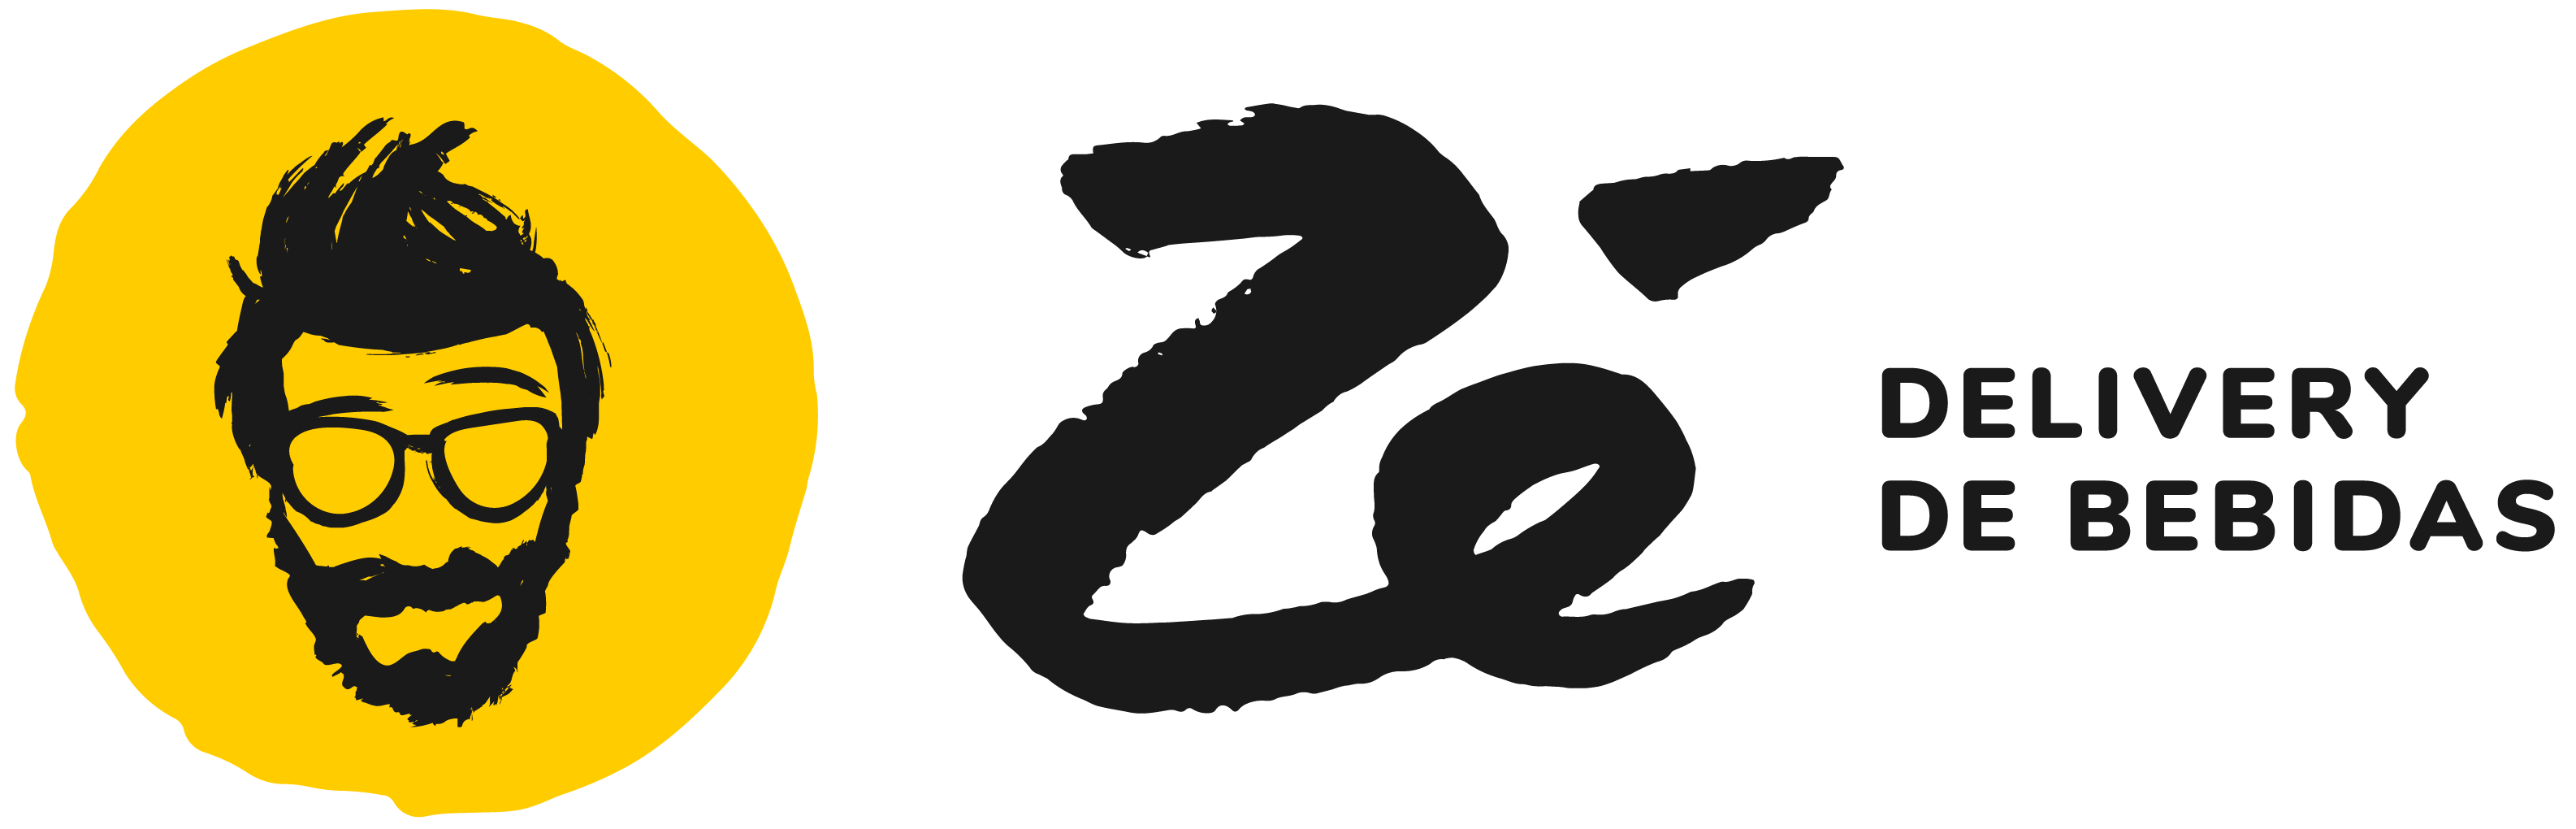 Zé delivery logo